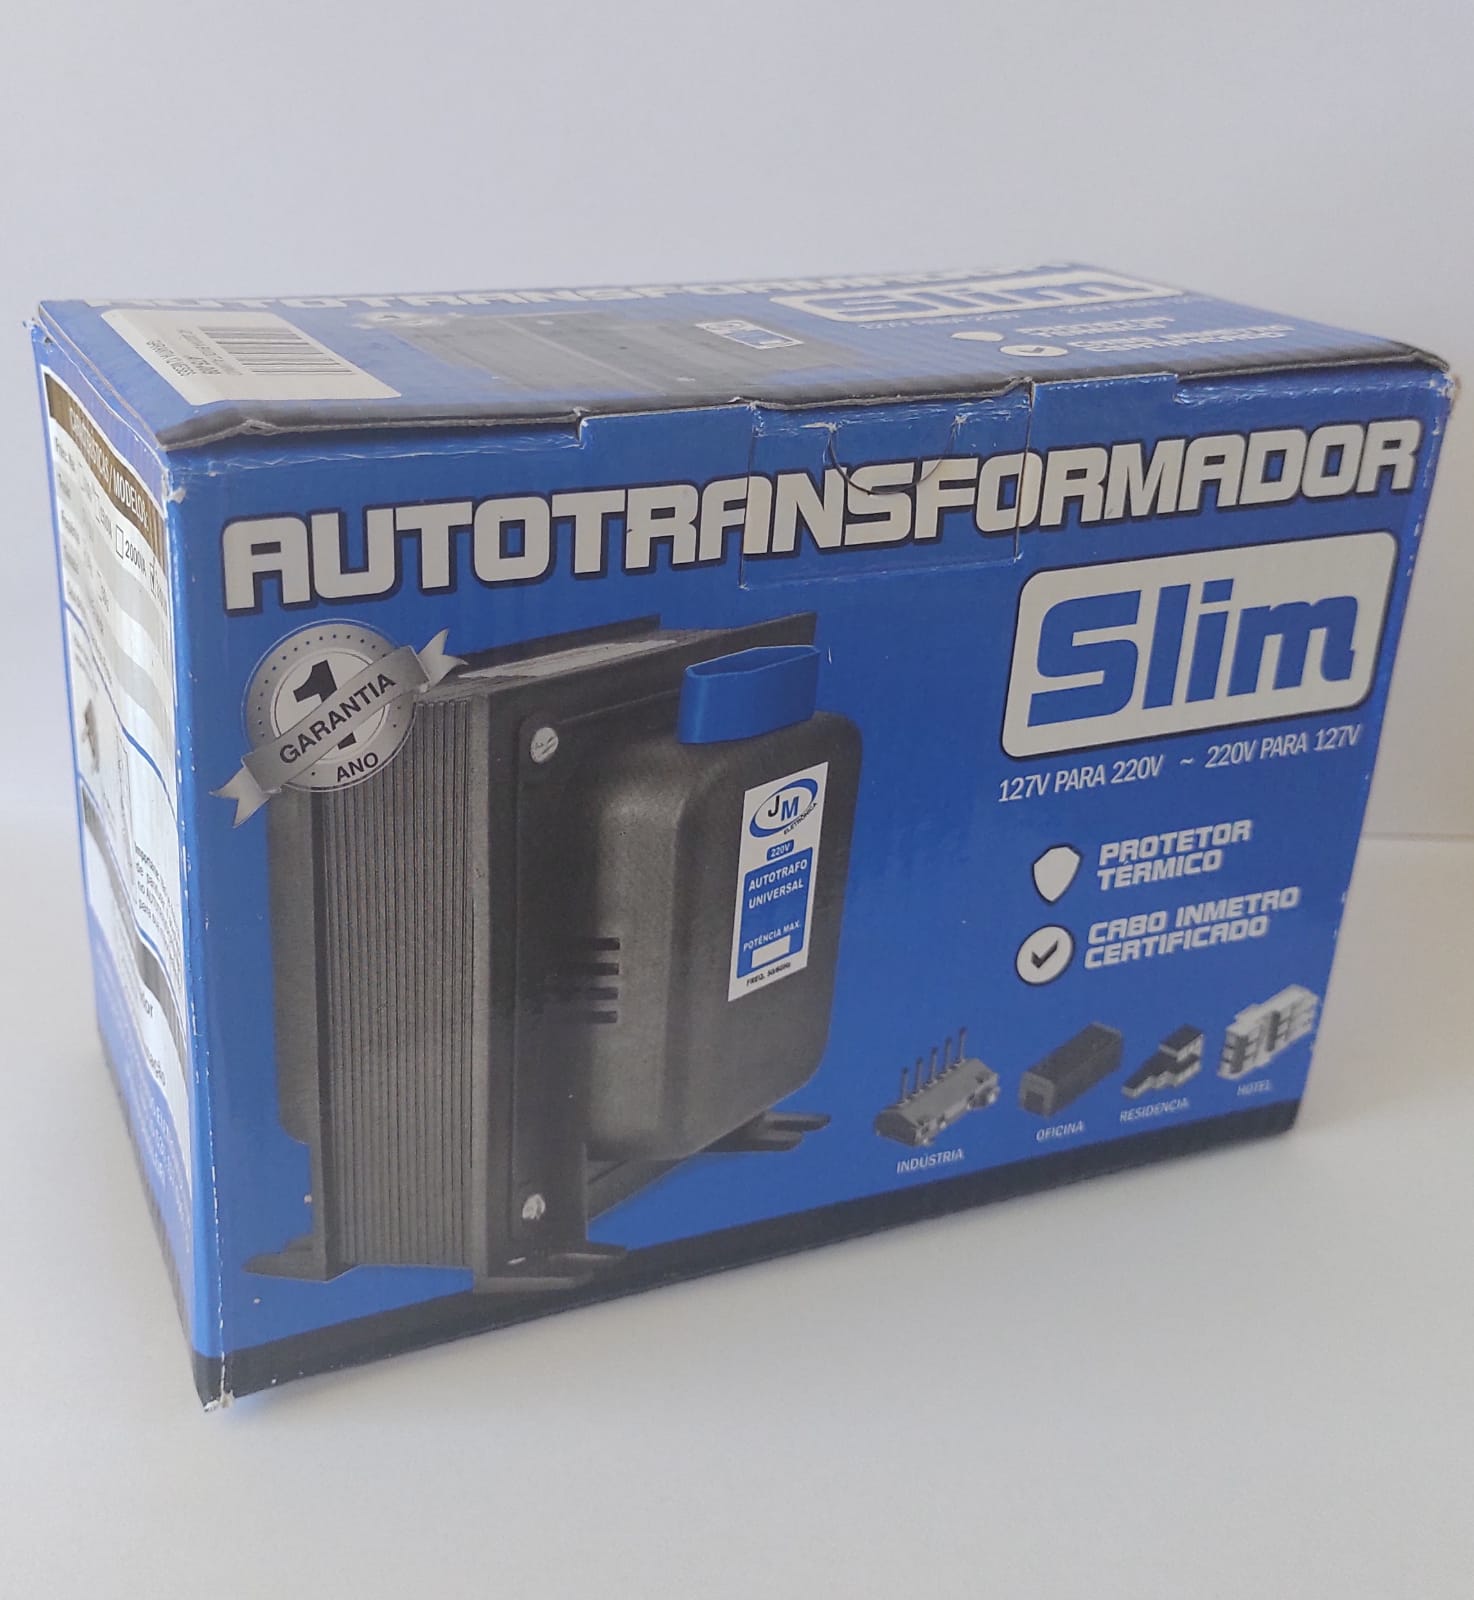 Autotransformador 3000VA Slim automático 127V para 220V e 220V para 127V